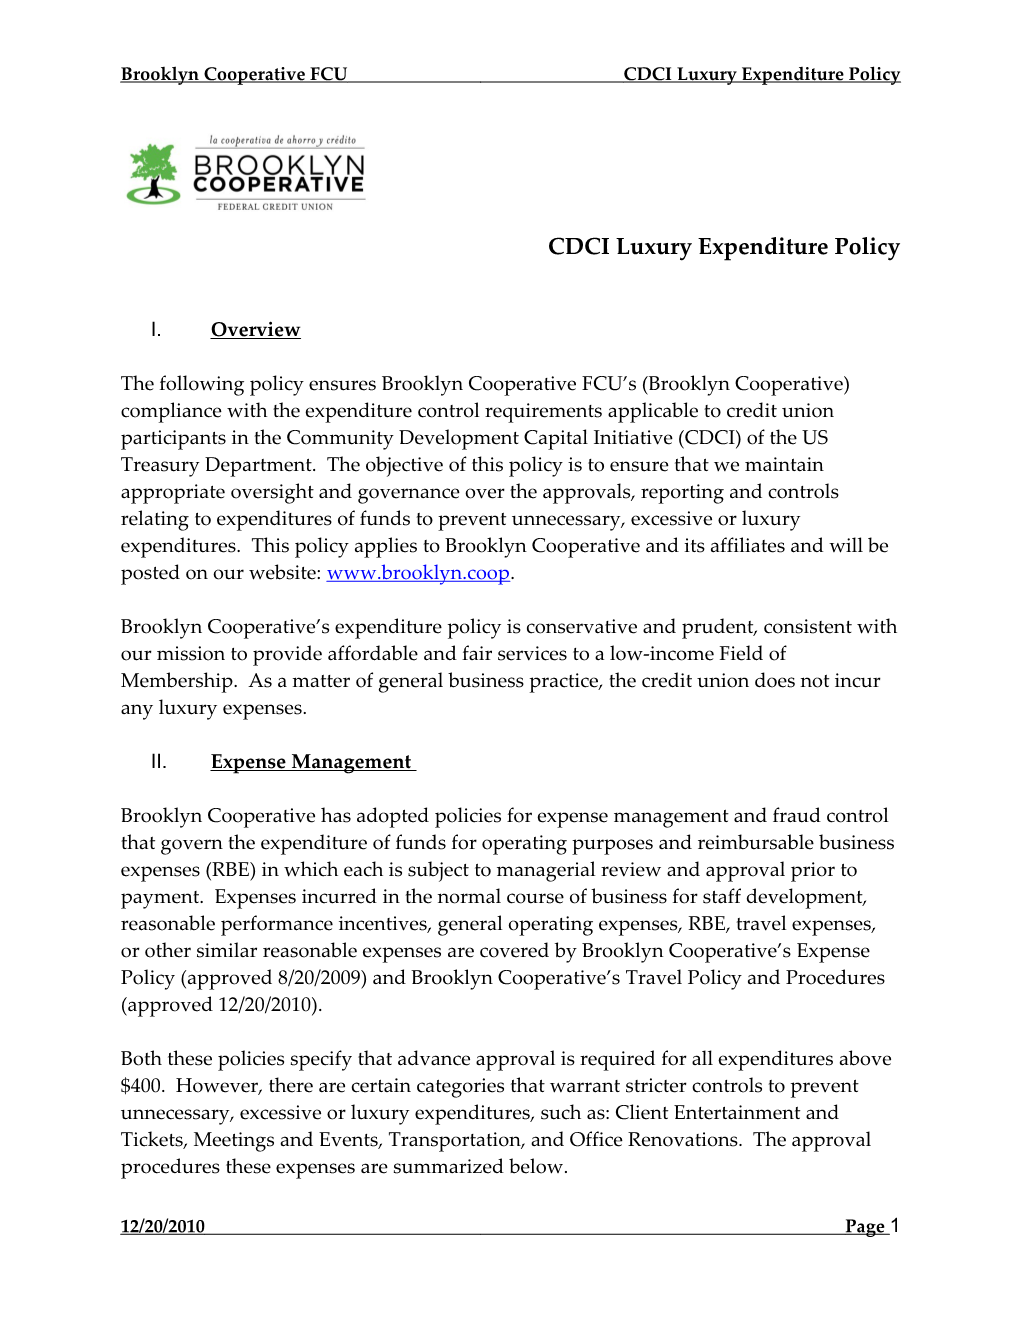 CDCI Luxury Expenditure Policy